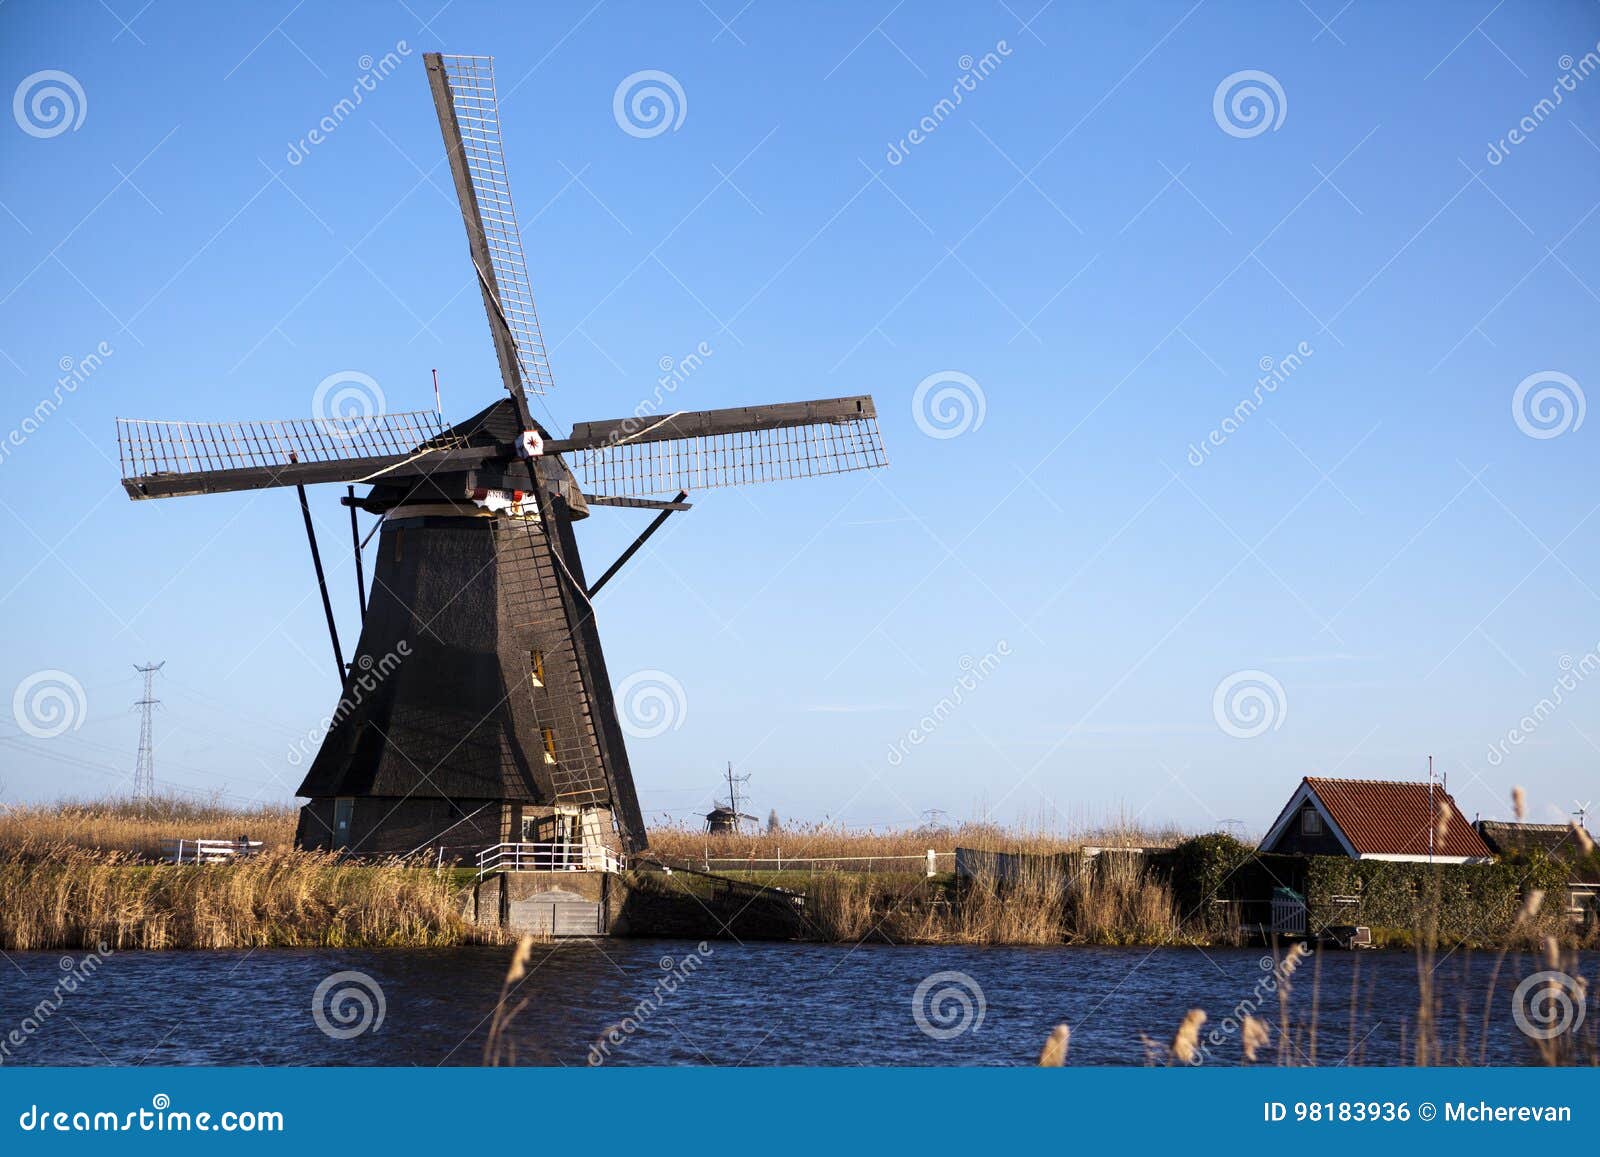 I vecchi mulini a vento olandesi, Olanda, estensioni rurali Mulini a vento, il simbolo dell'Olanda Mulino a vento dell'Olanda su un canale Vecchi gesso e farina del mulino